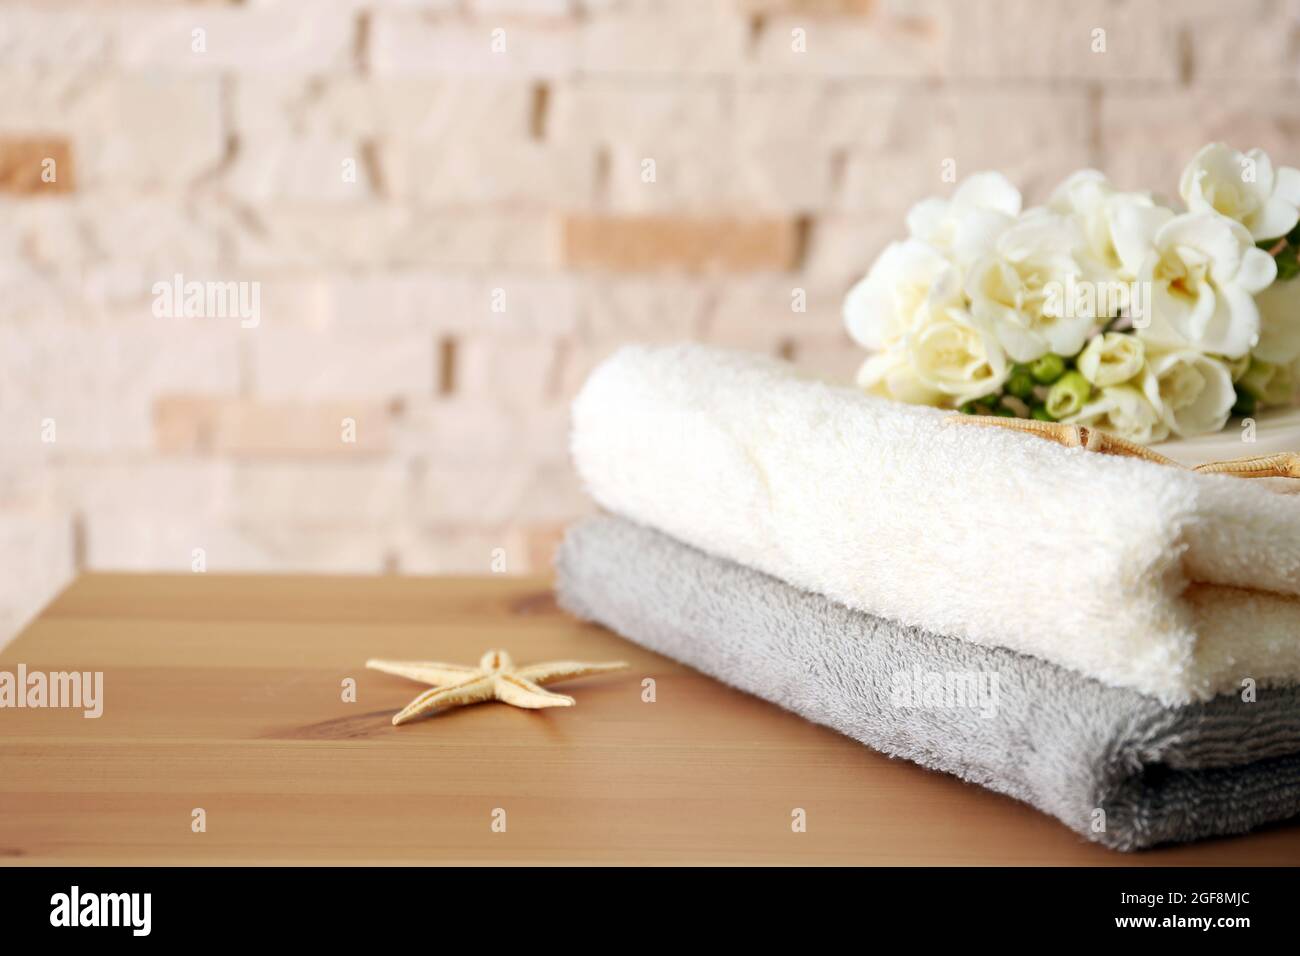 Handtücher mit Blumen auf dem Tisch Stockfotografie - Alamy